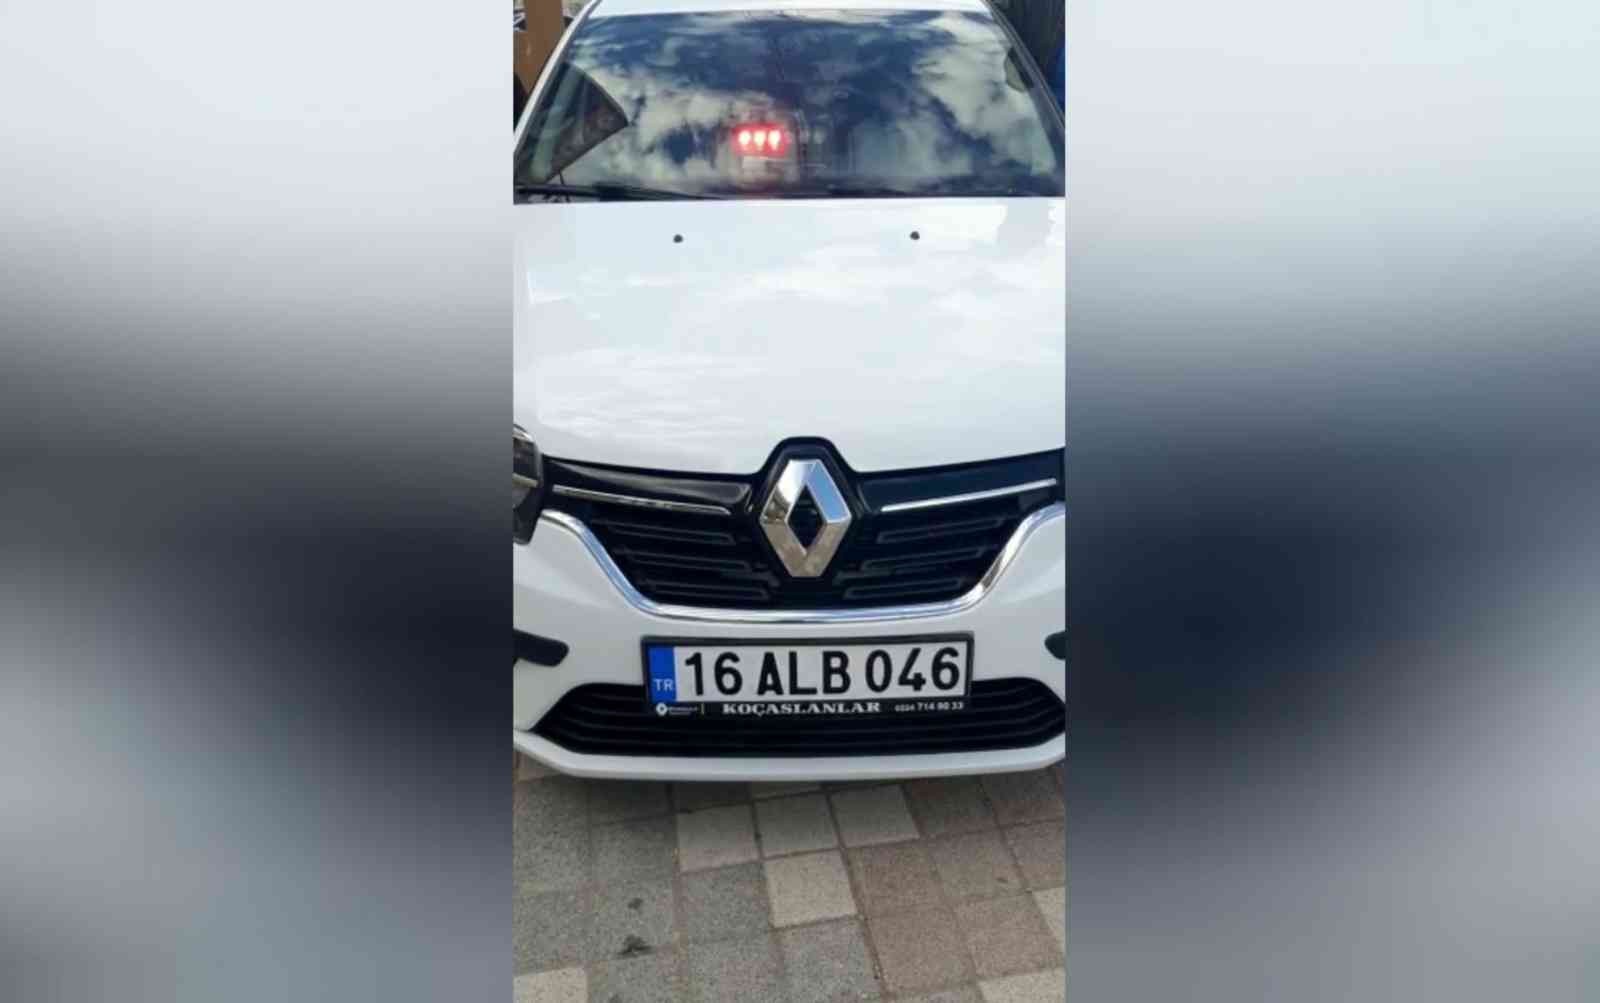 Bursa’da çakar lamba kullanan sürücüye ceza yağdı #bursa